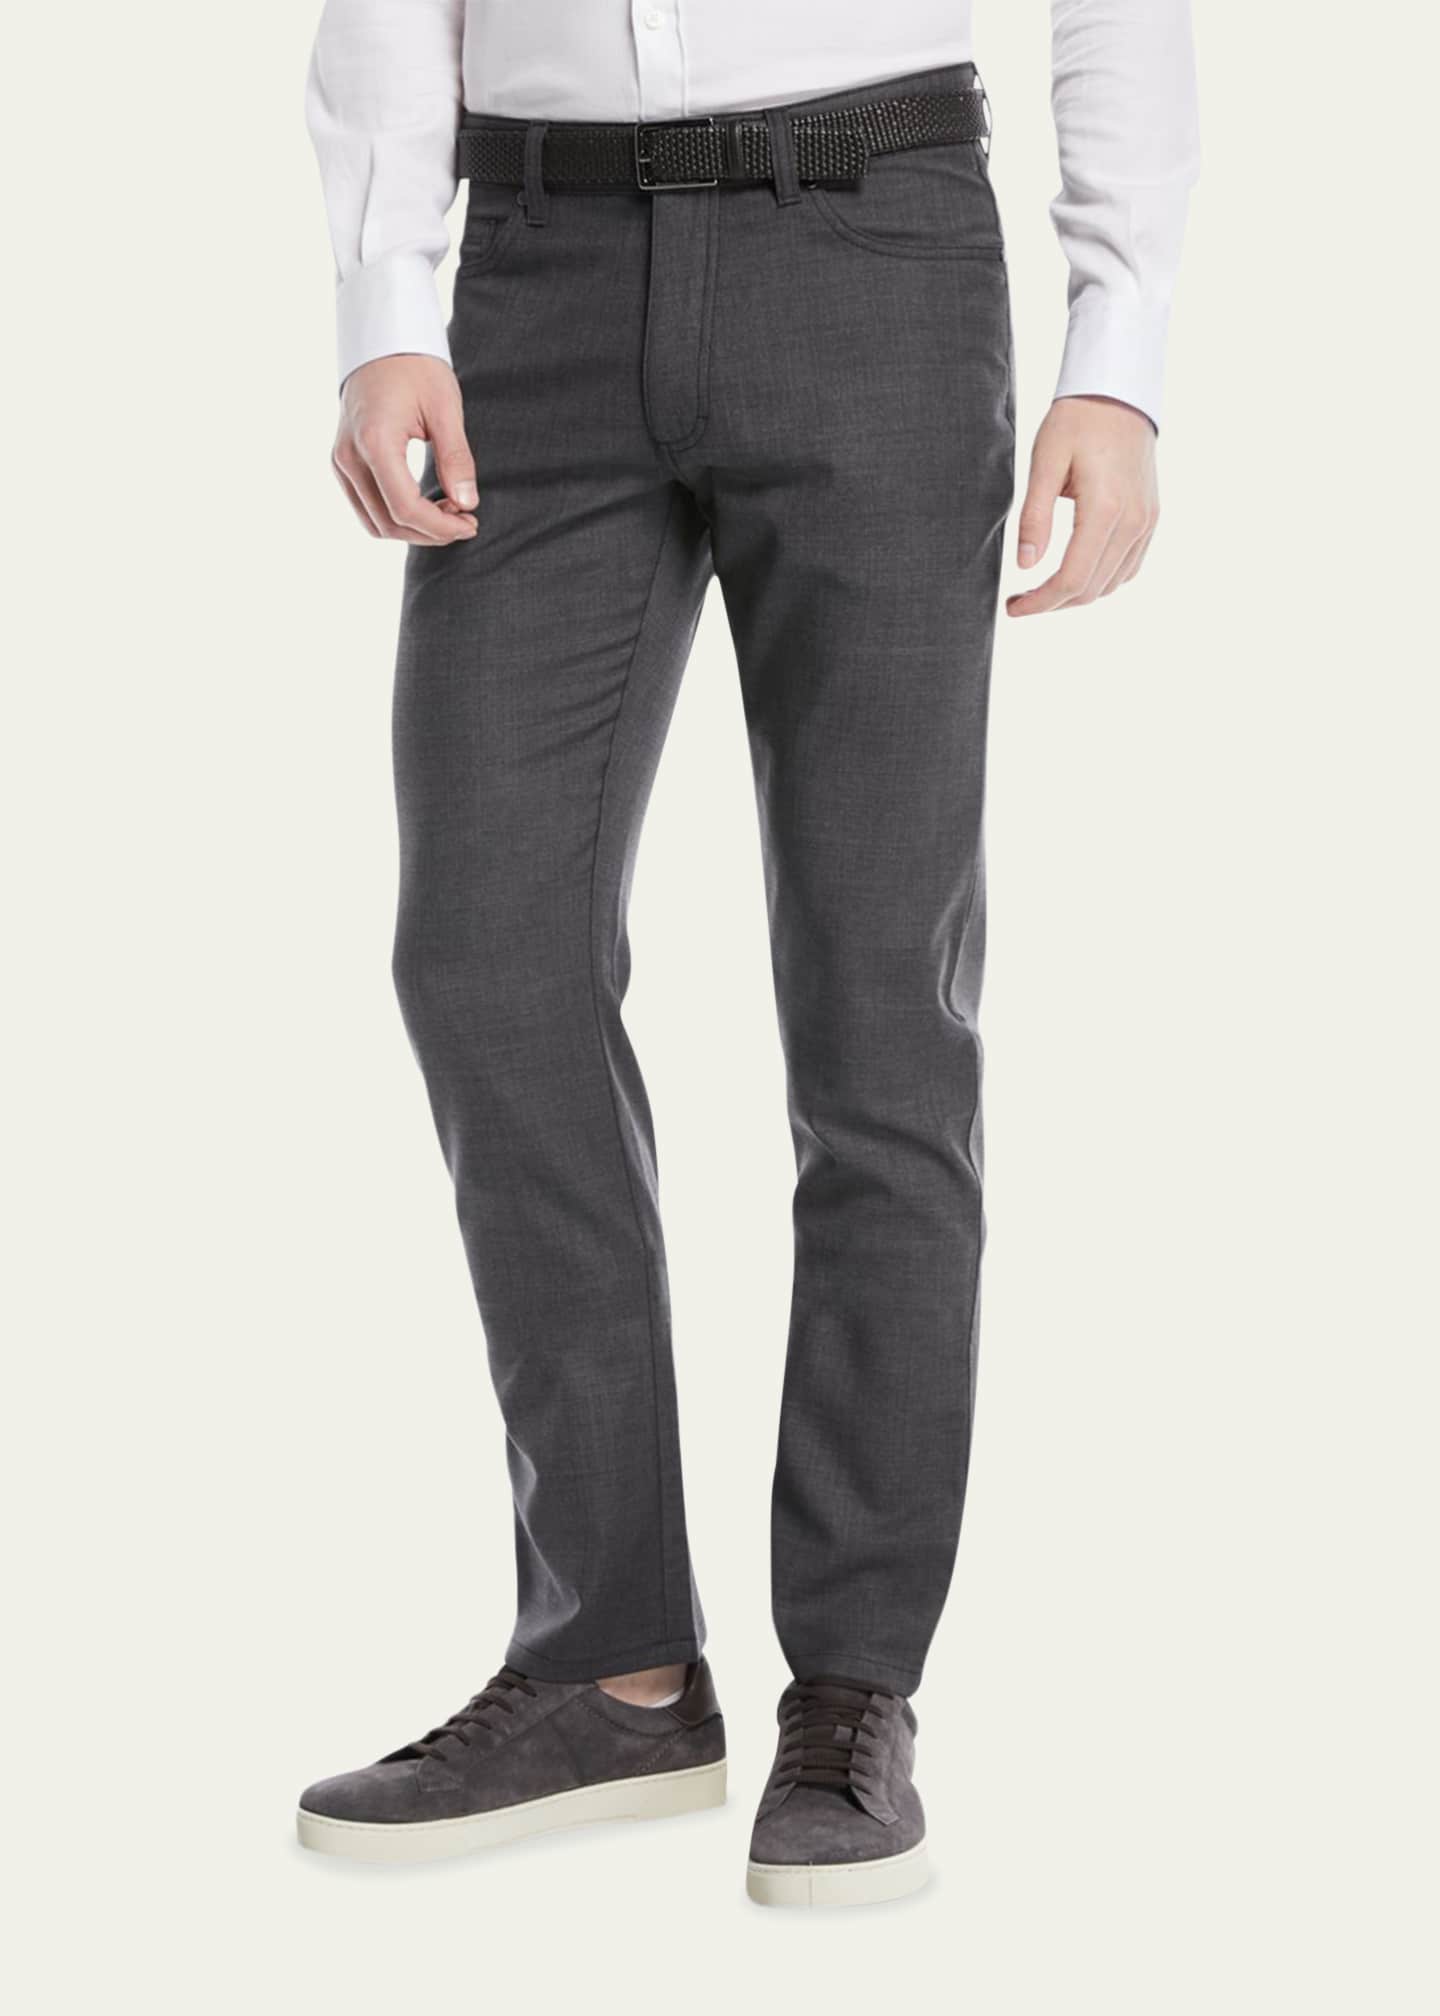 ZEGNA Men's Regular-Fit Textured Wool-Blend 5-Pocket Pants Image 1 of 4